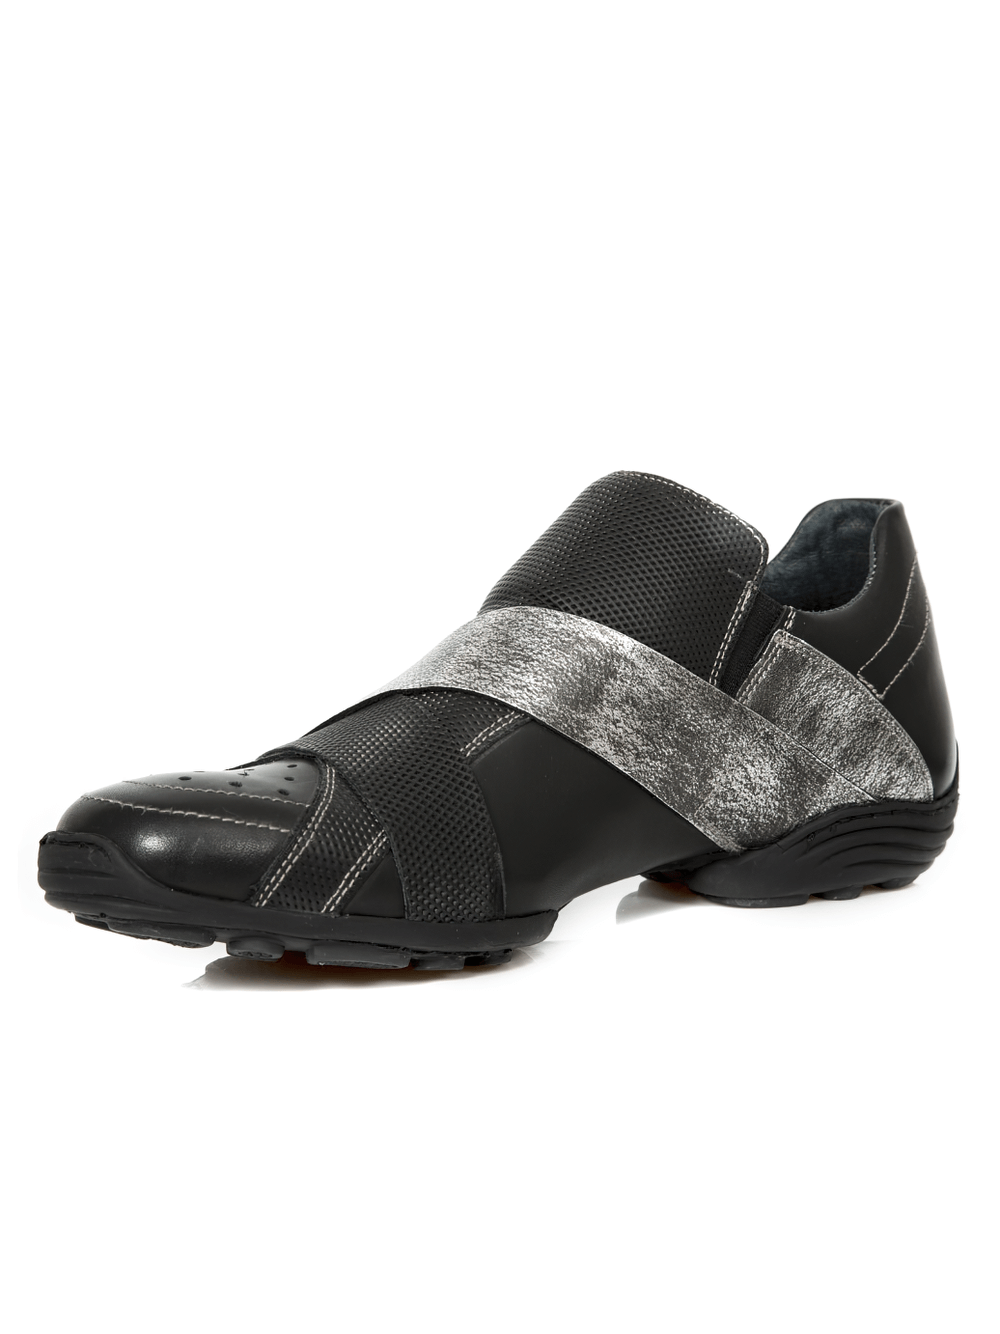 NEW ROCK Zapatos Rock negros con tira de velcro plateada de hombre